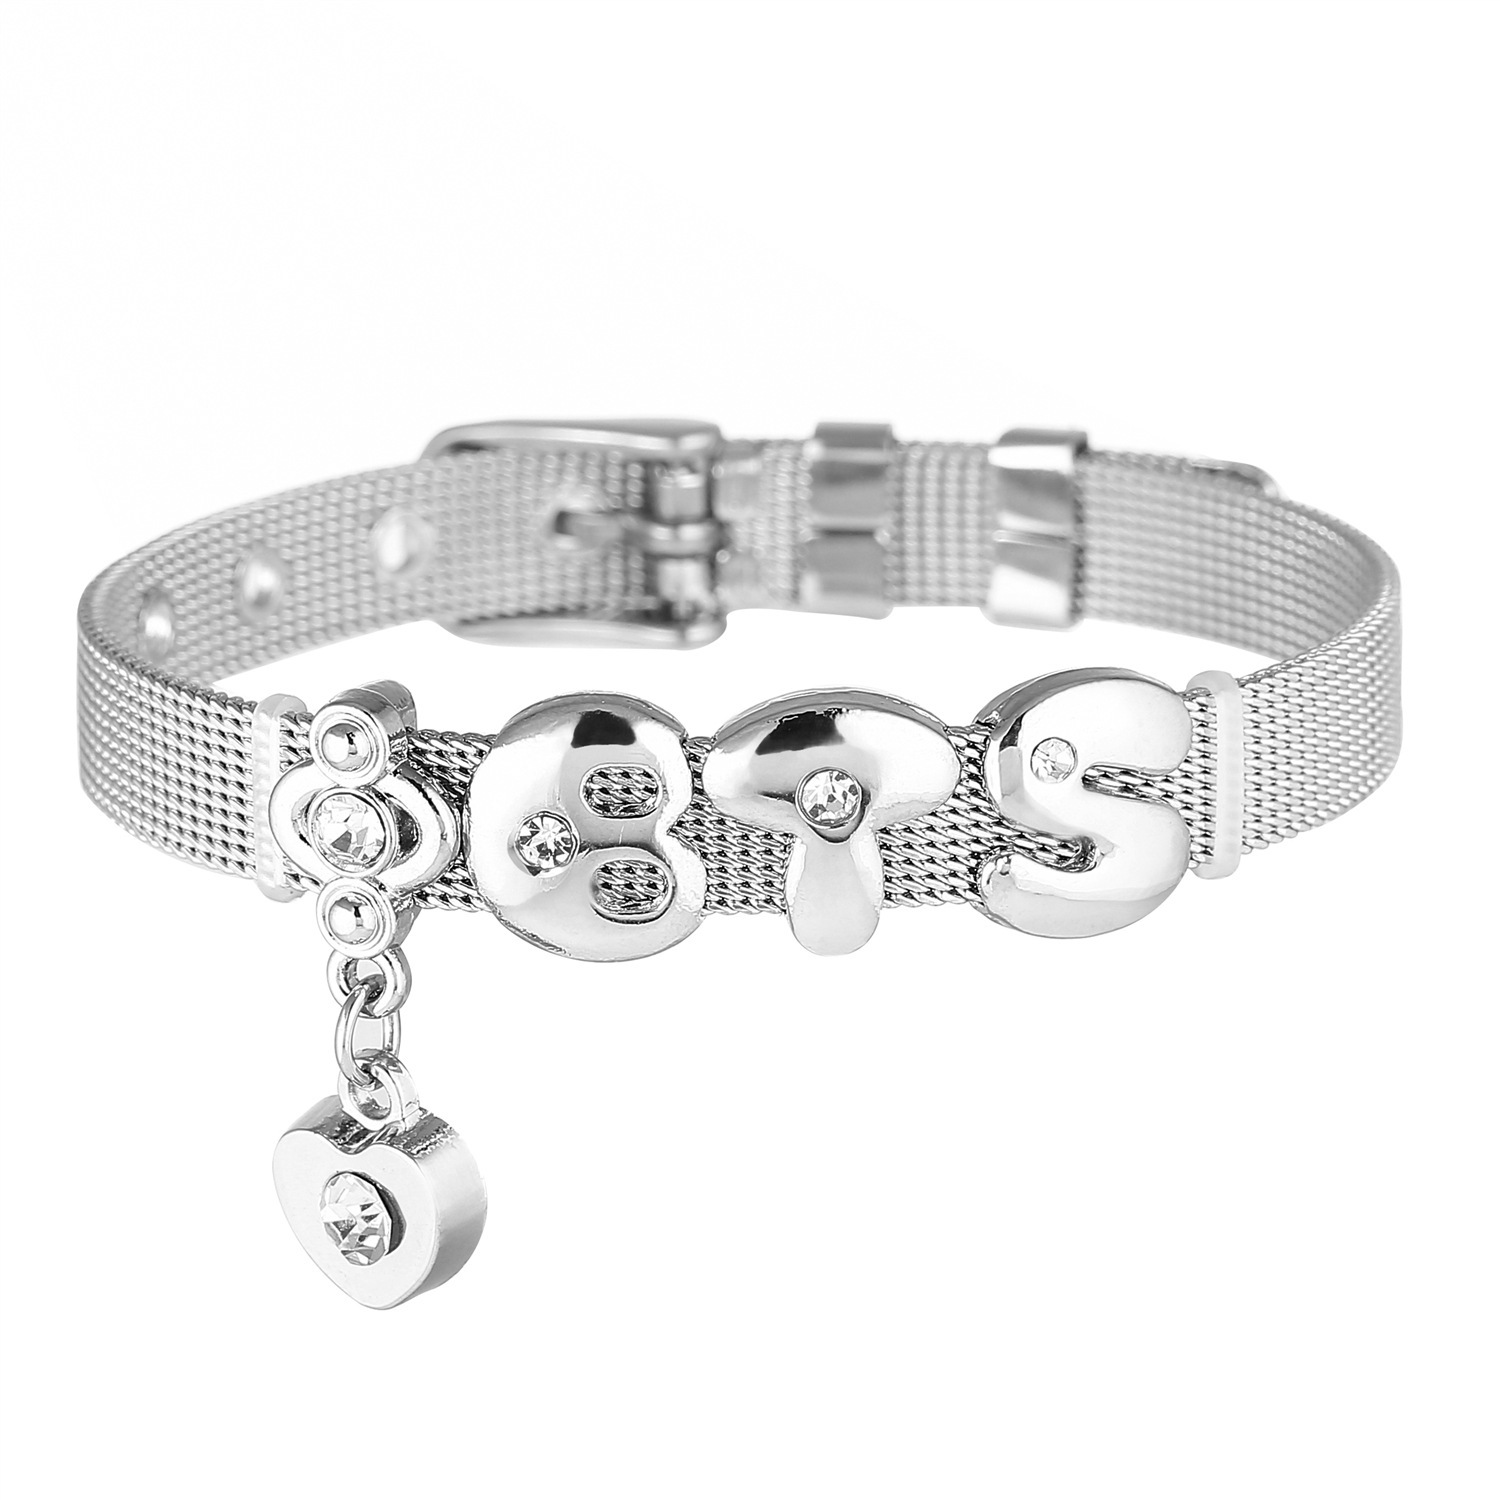 BTS V Taehyung's Woven Bracelet